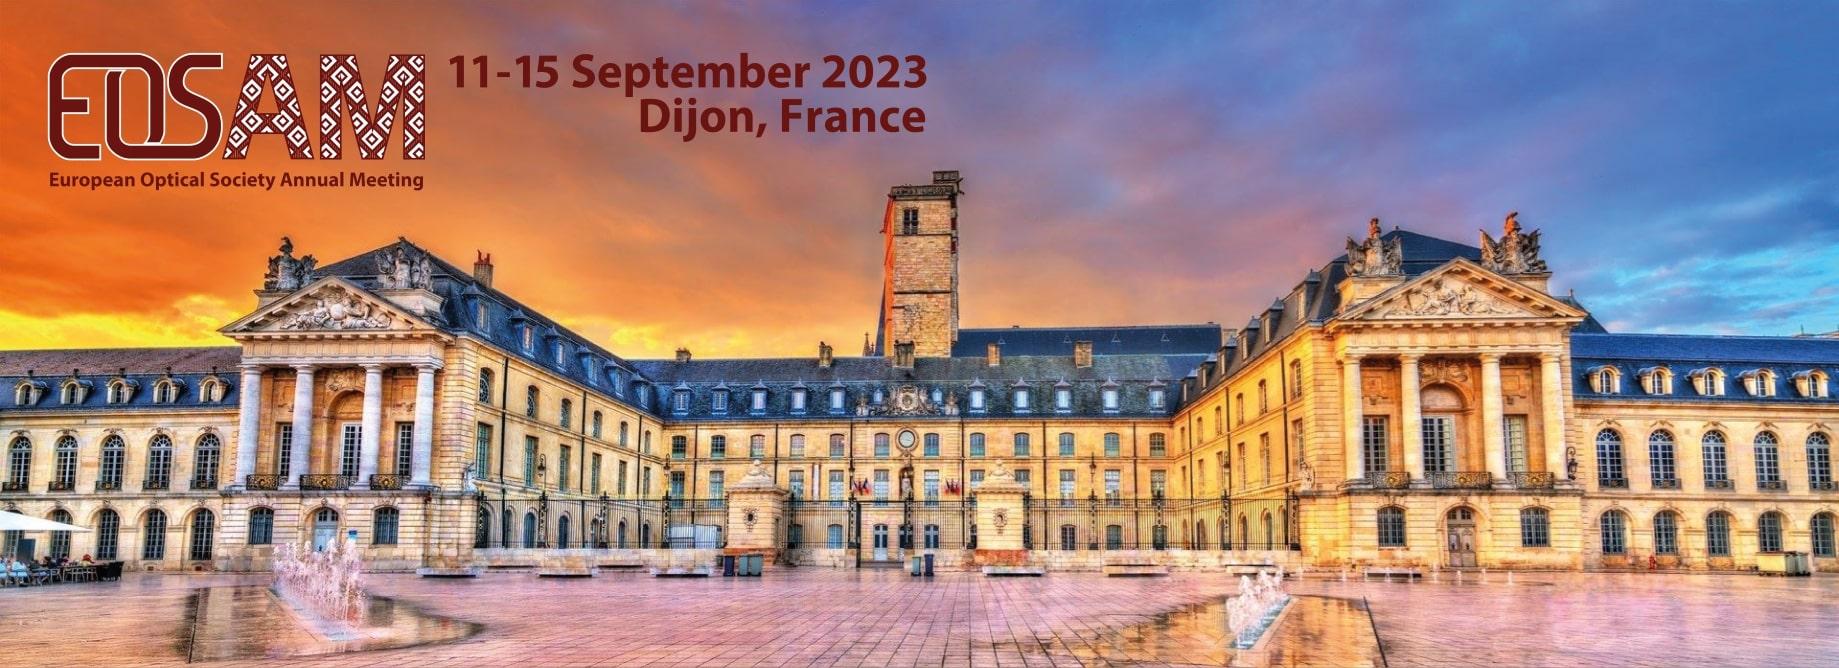 SAVE THE DATE: EOSAM 11-15 September 2023 in Dijon, France